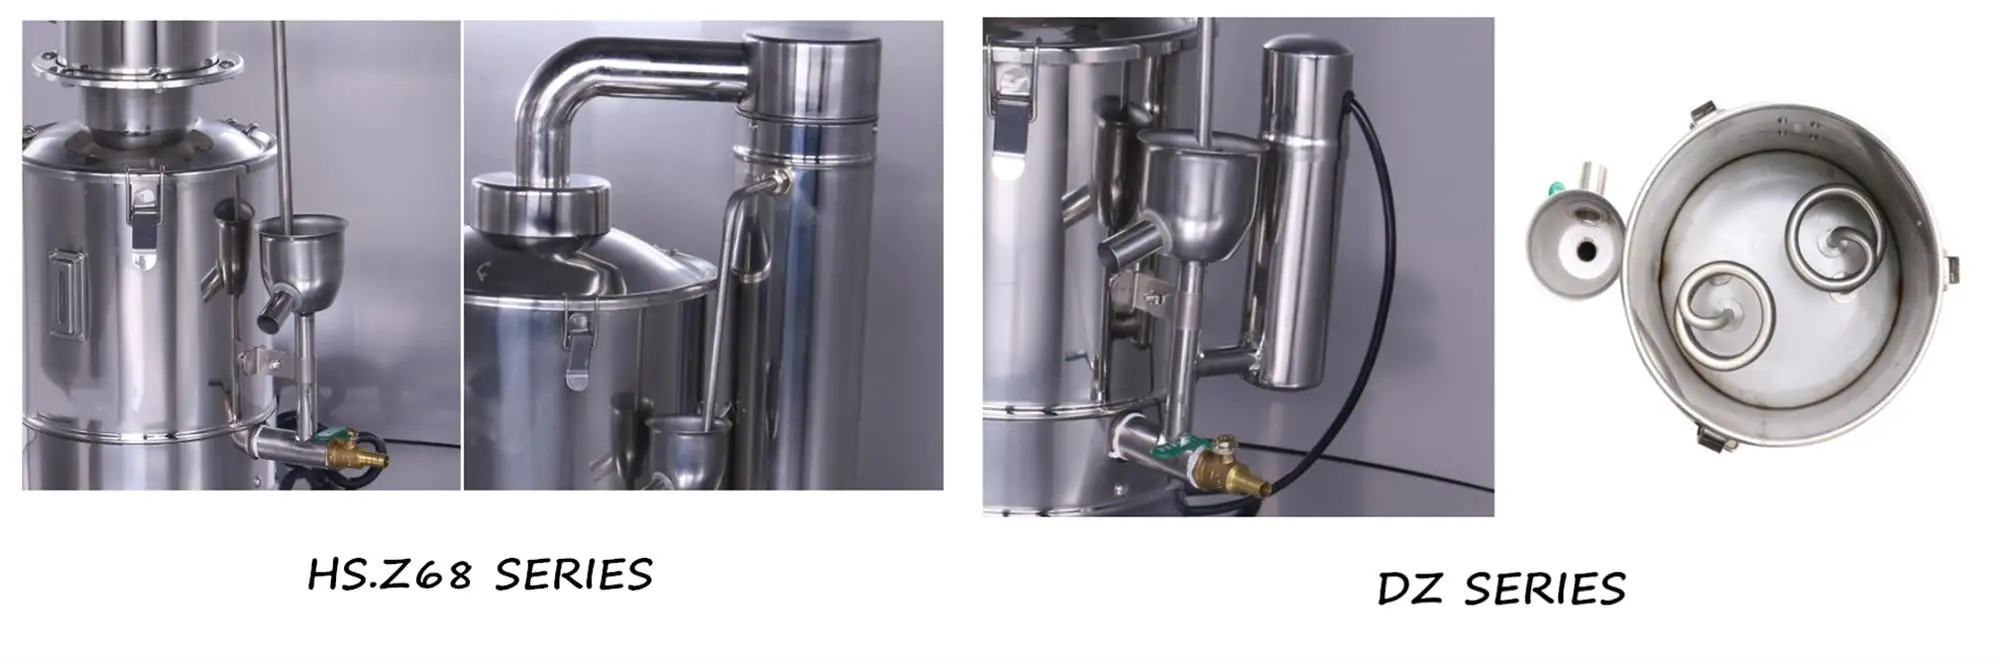 HS.Z68 Laboratory Water Distiller Industrial Distiller Automatic Pure-water Distillation